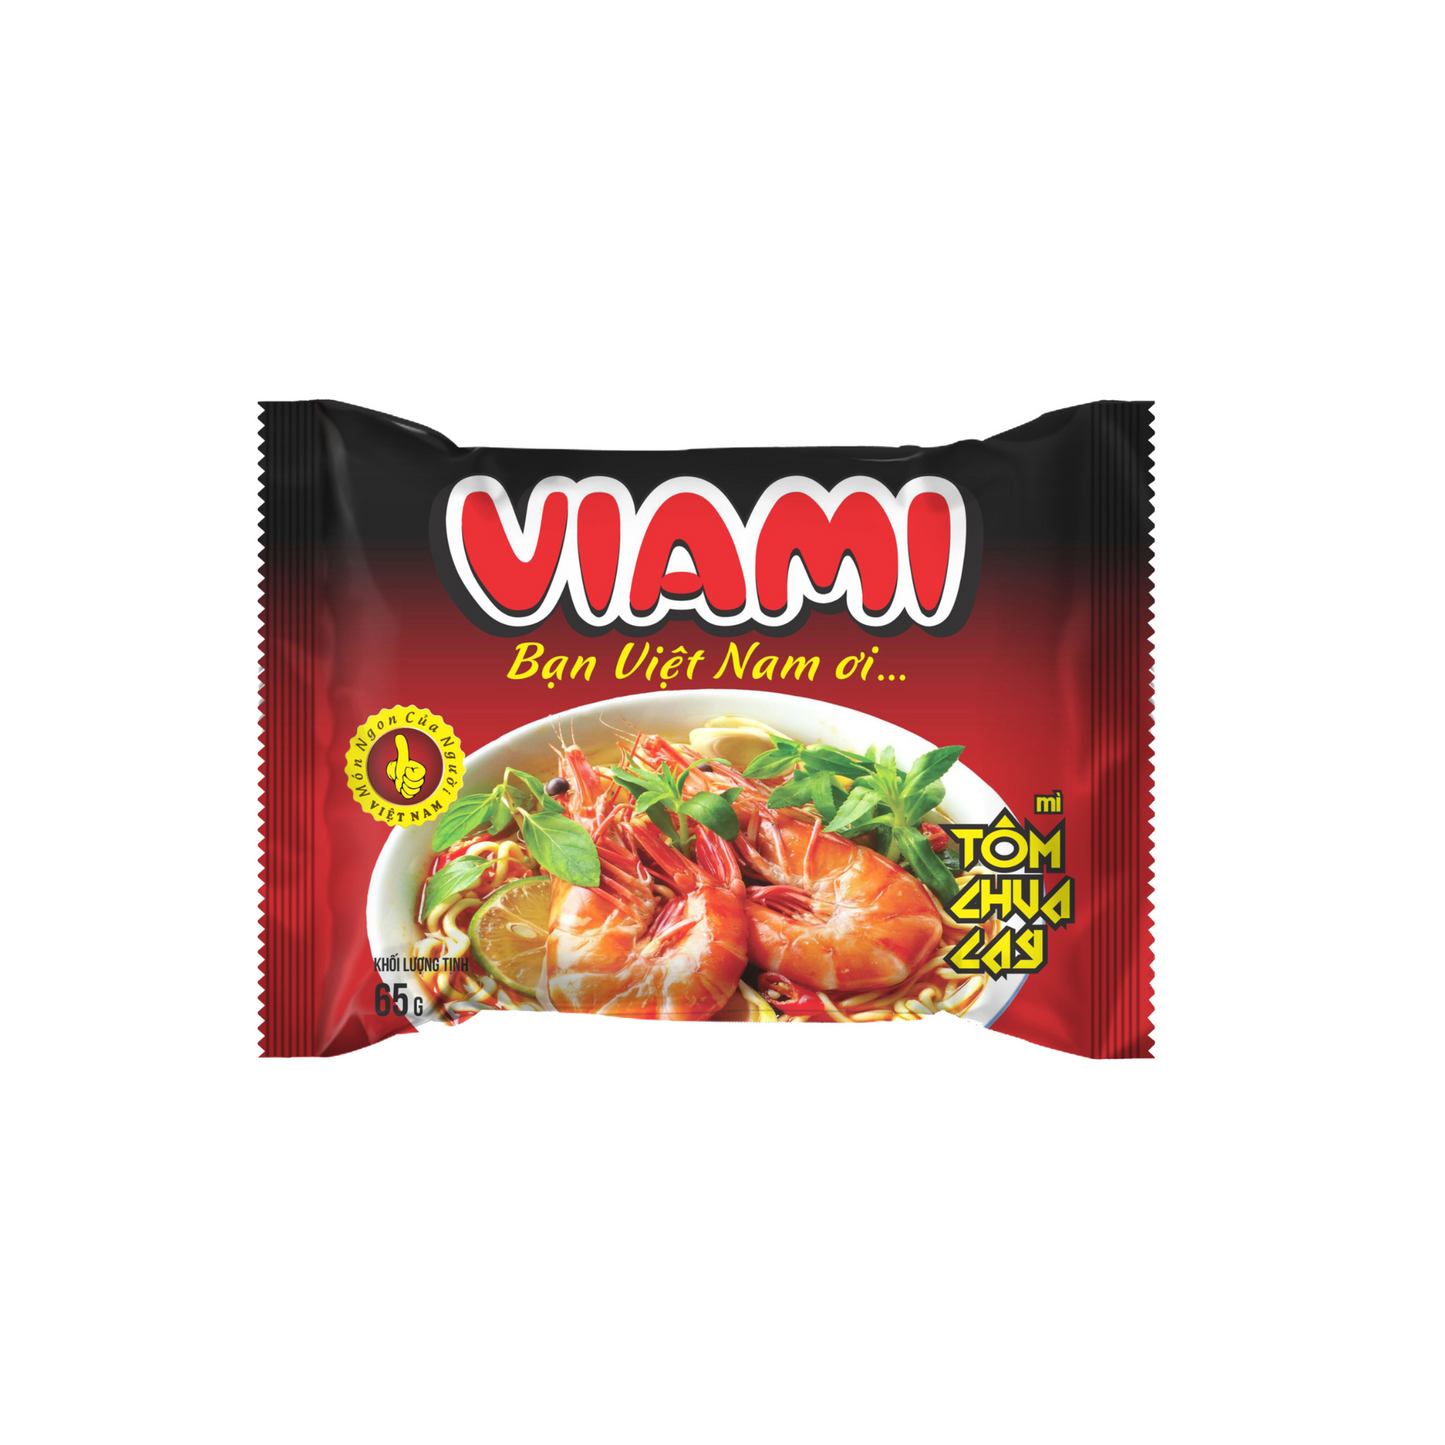 Viami Instant Noodles - Spicy & Sour Shrimp Flavour